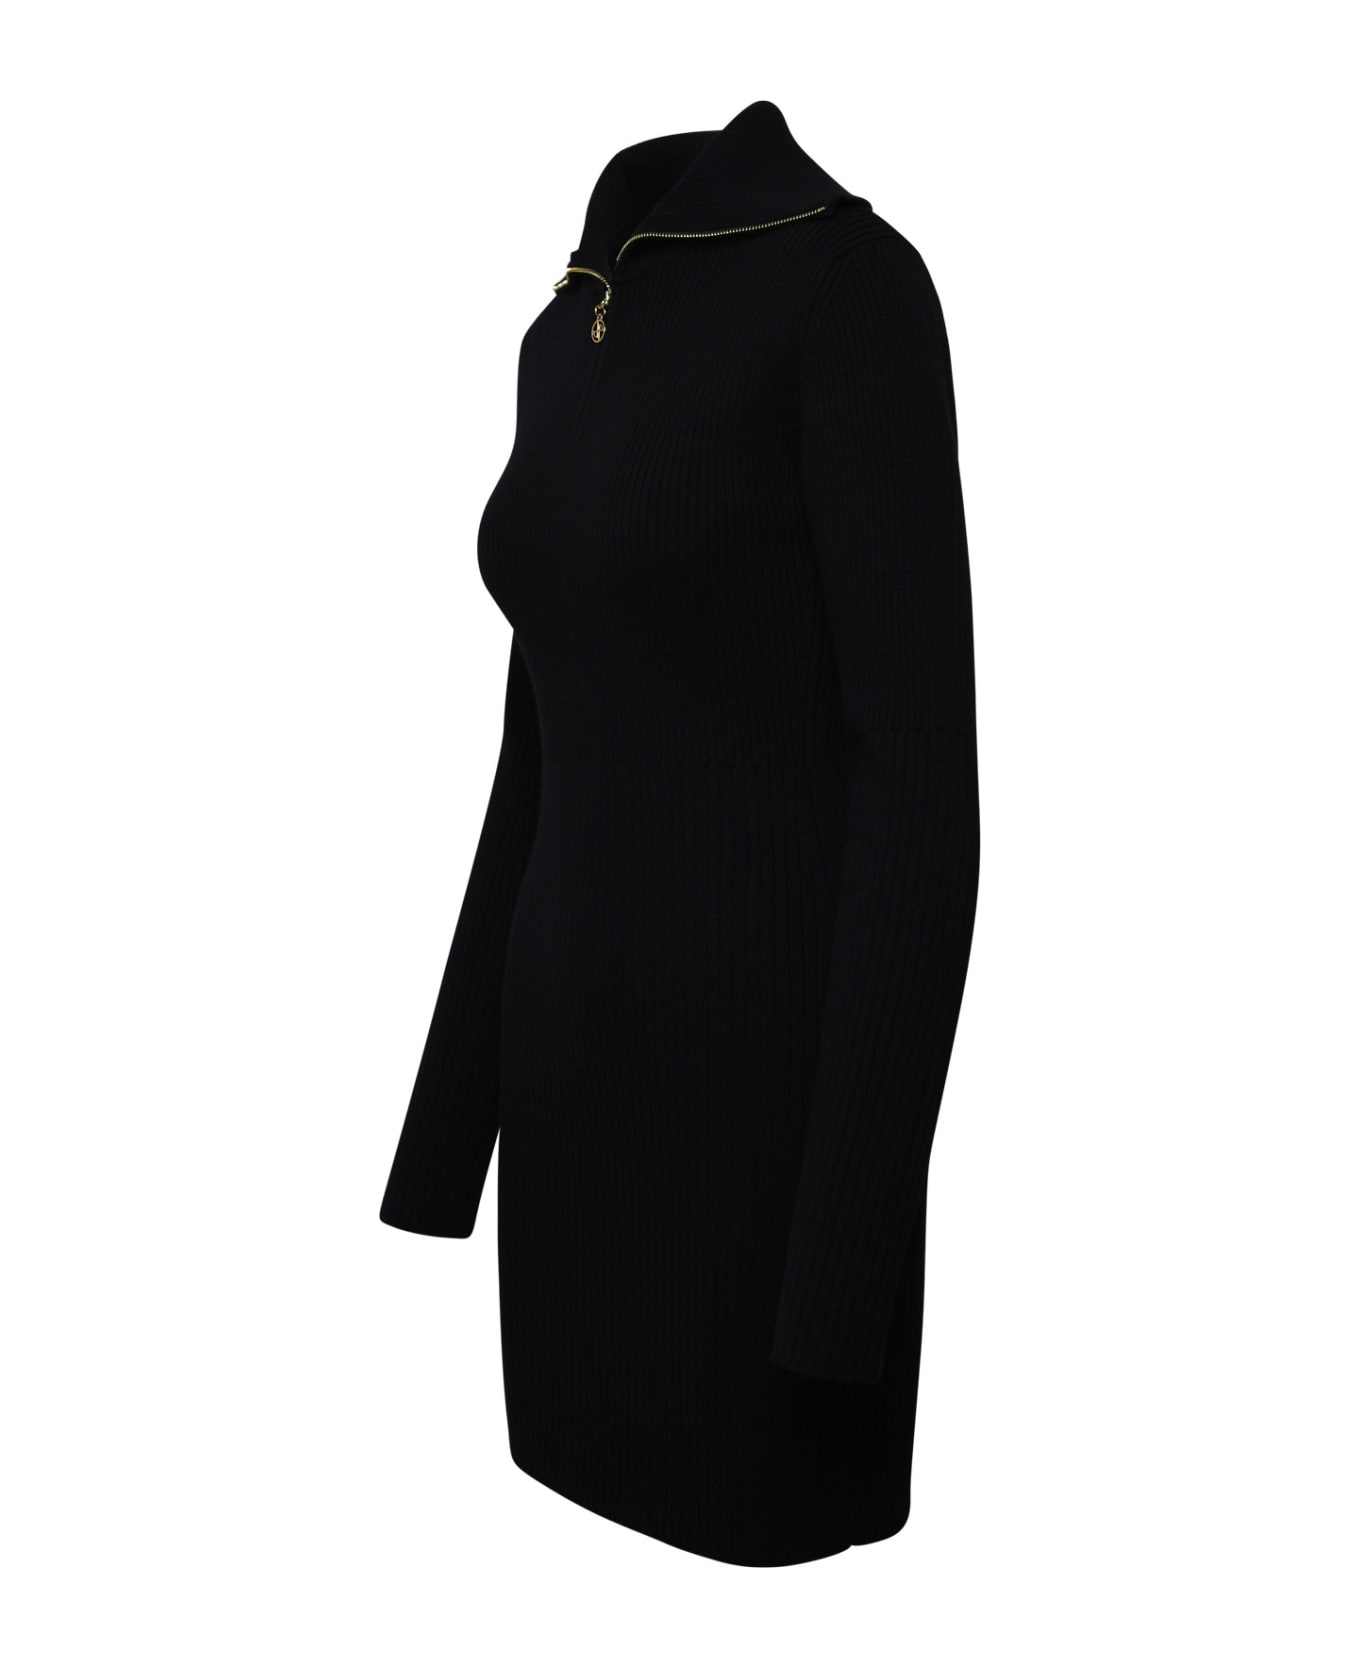 Patou Merino Wool Dress - Black